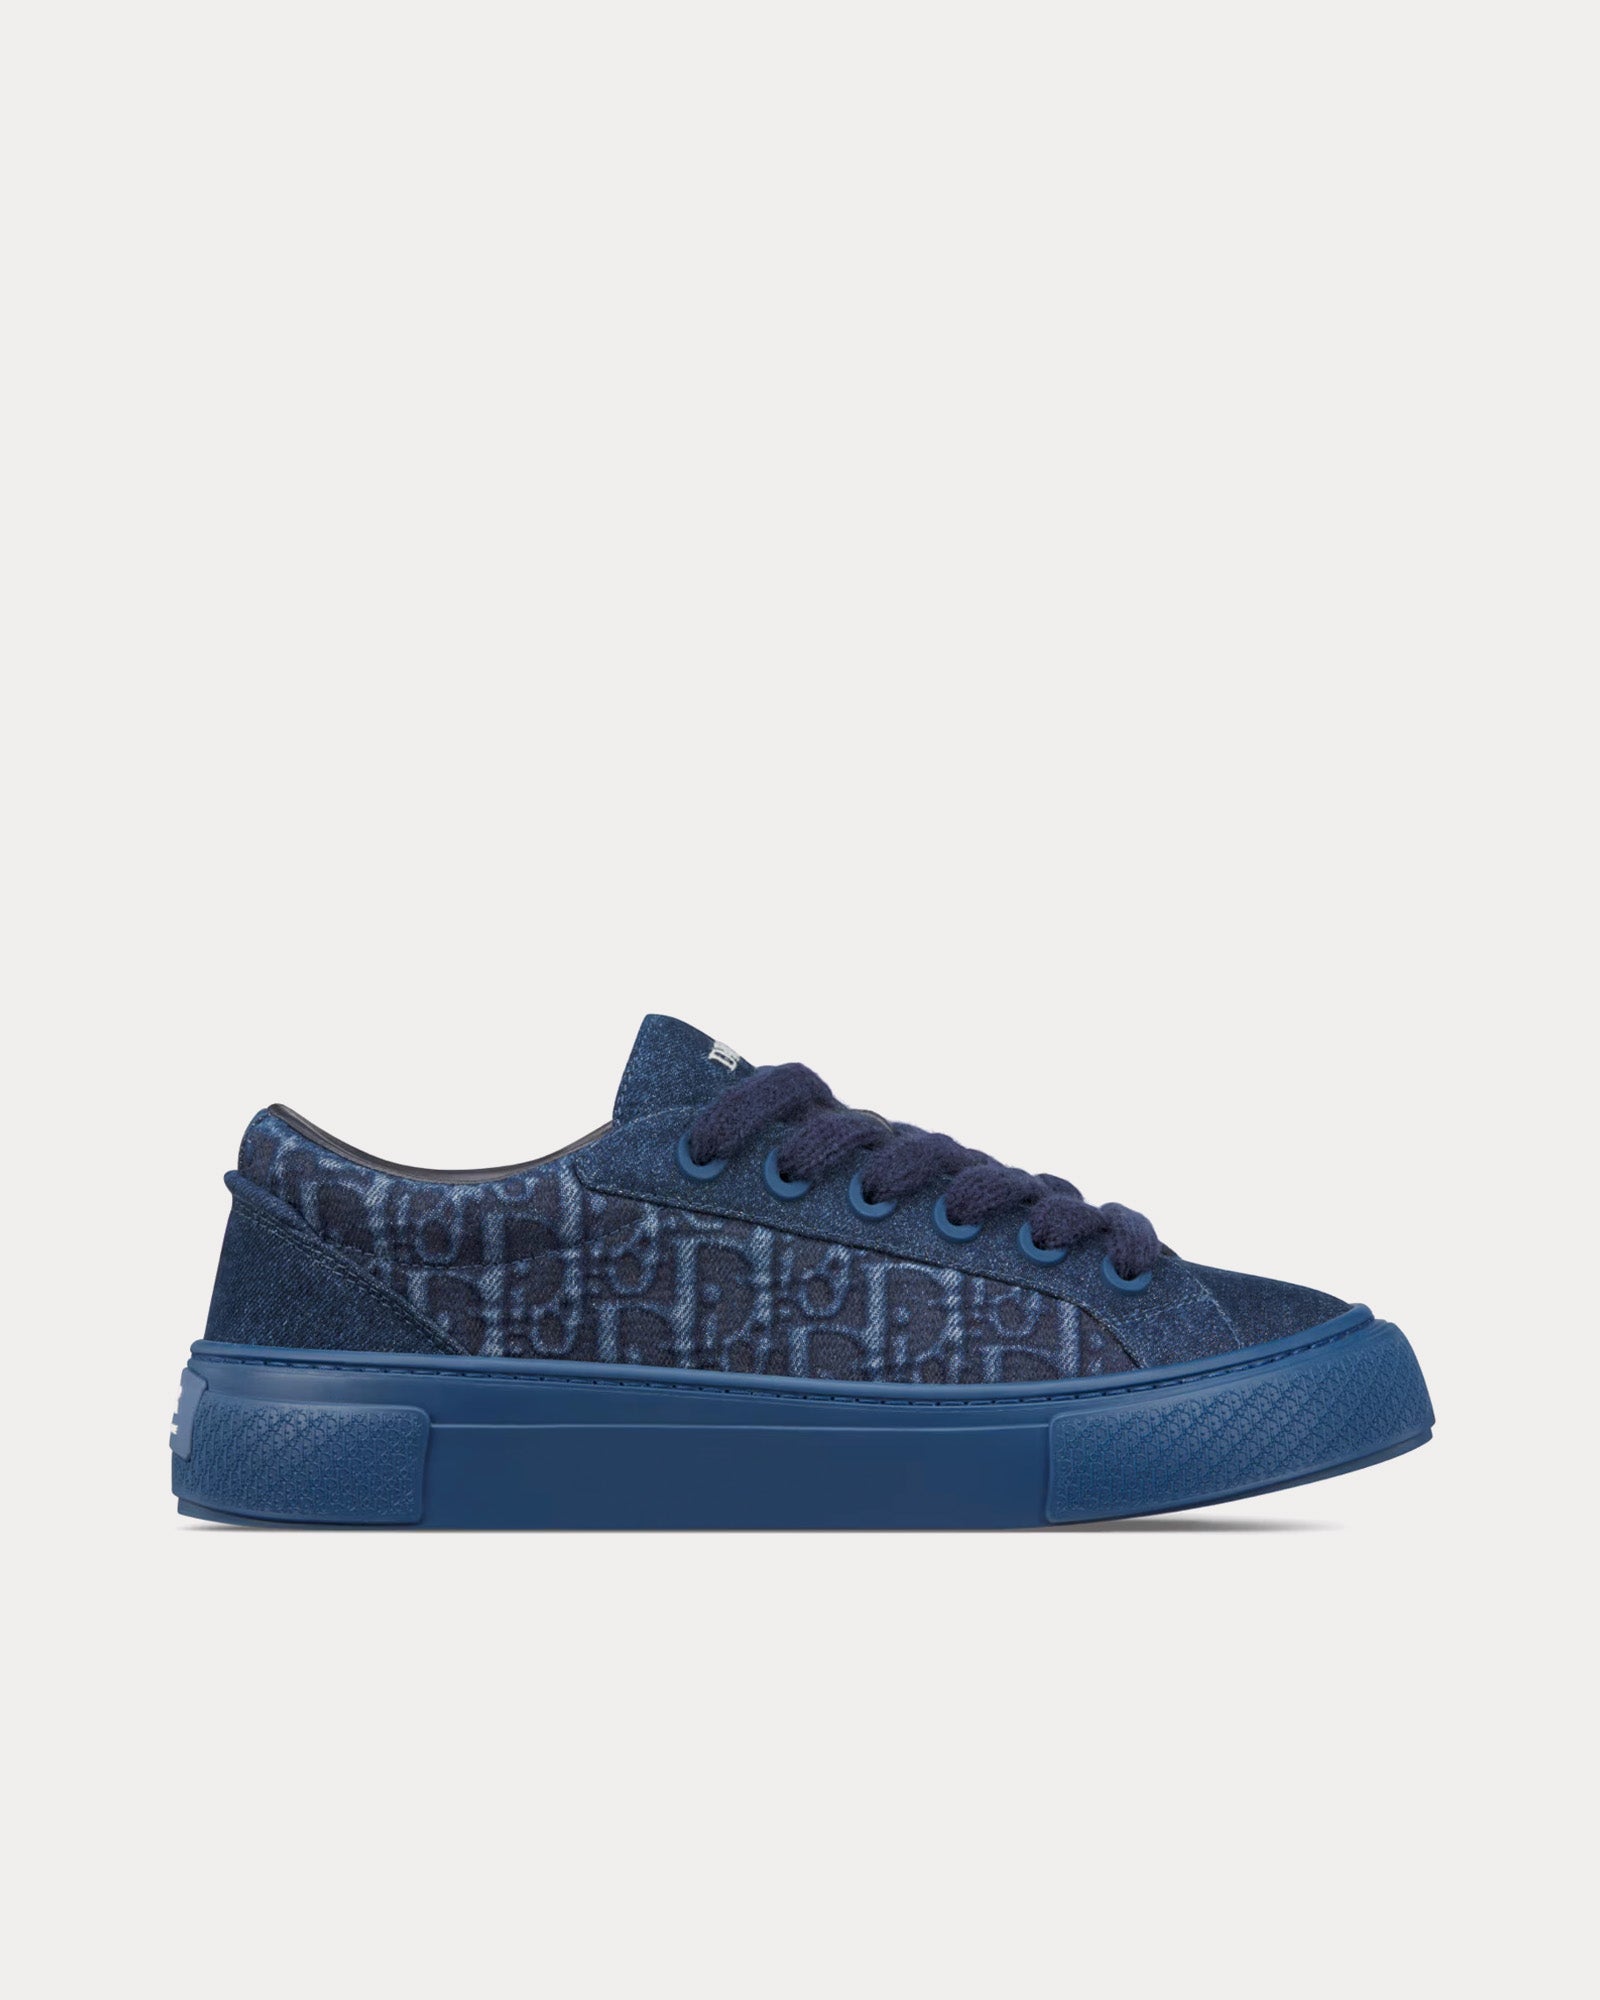 Dior - B33 Dior Oblique Denim Blue Low Top Sneakers